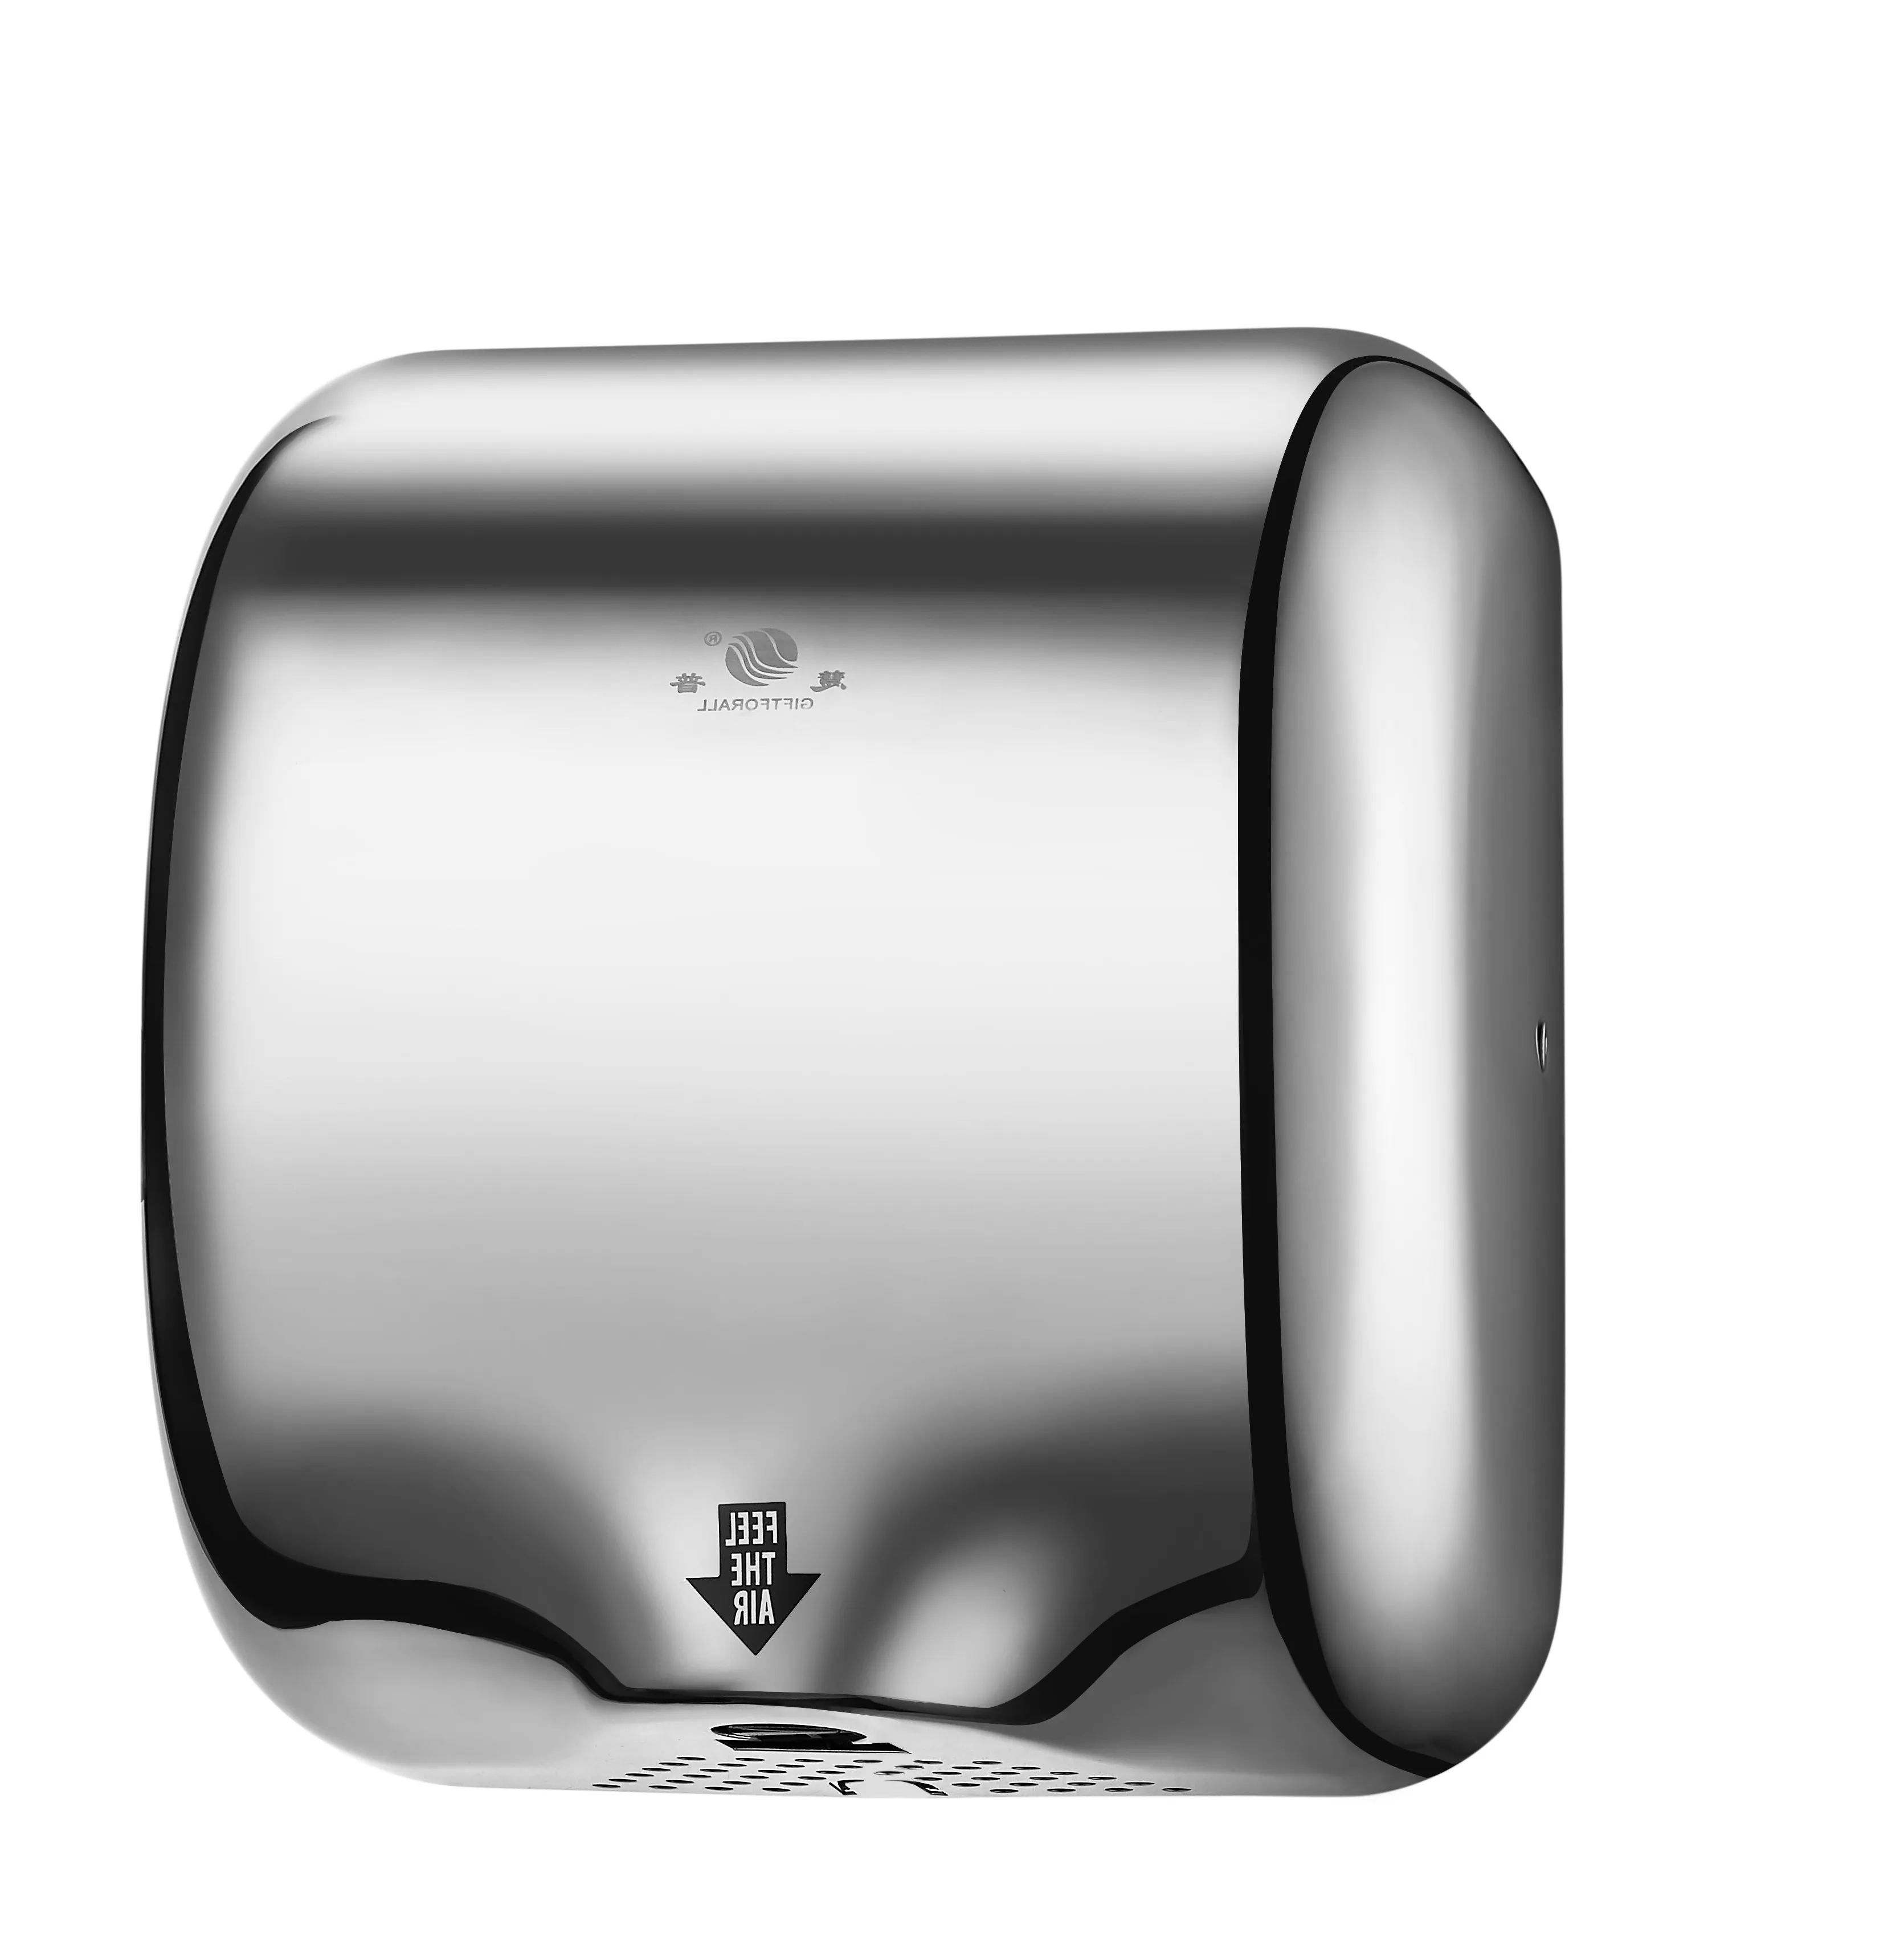 Vente en gros à bas prix 30 m/s haute vitesse Salle de bain sèche-mains mural Machine automatique en acier inoxydable Ss304 sèche-mains électrique